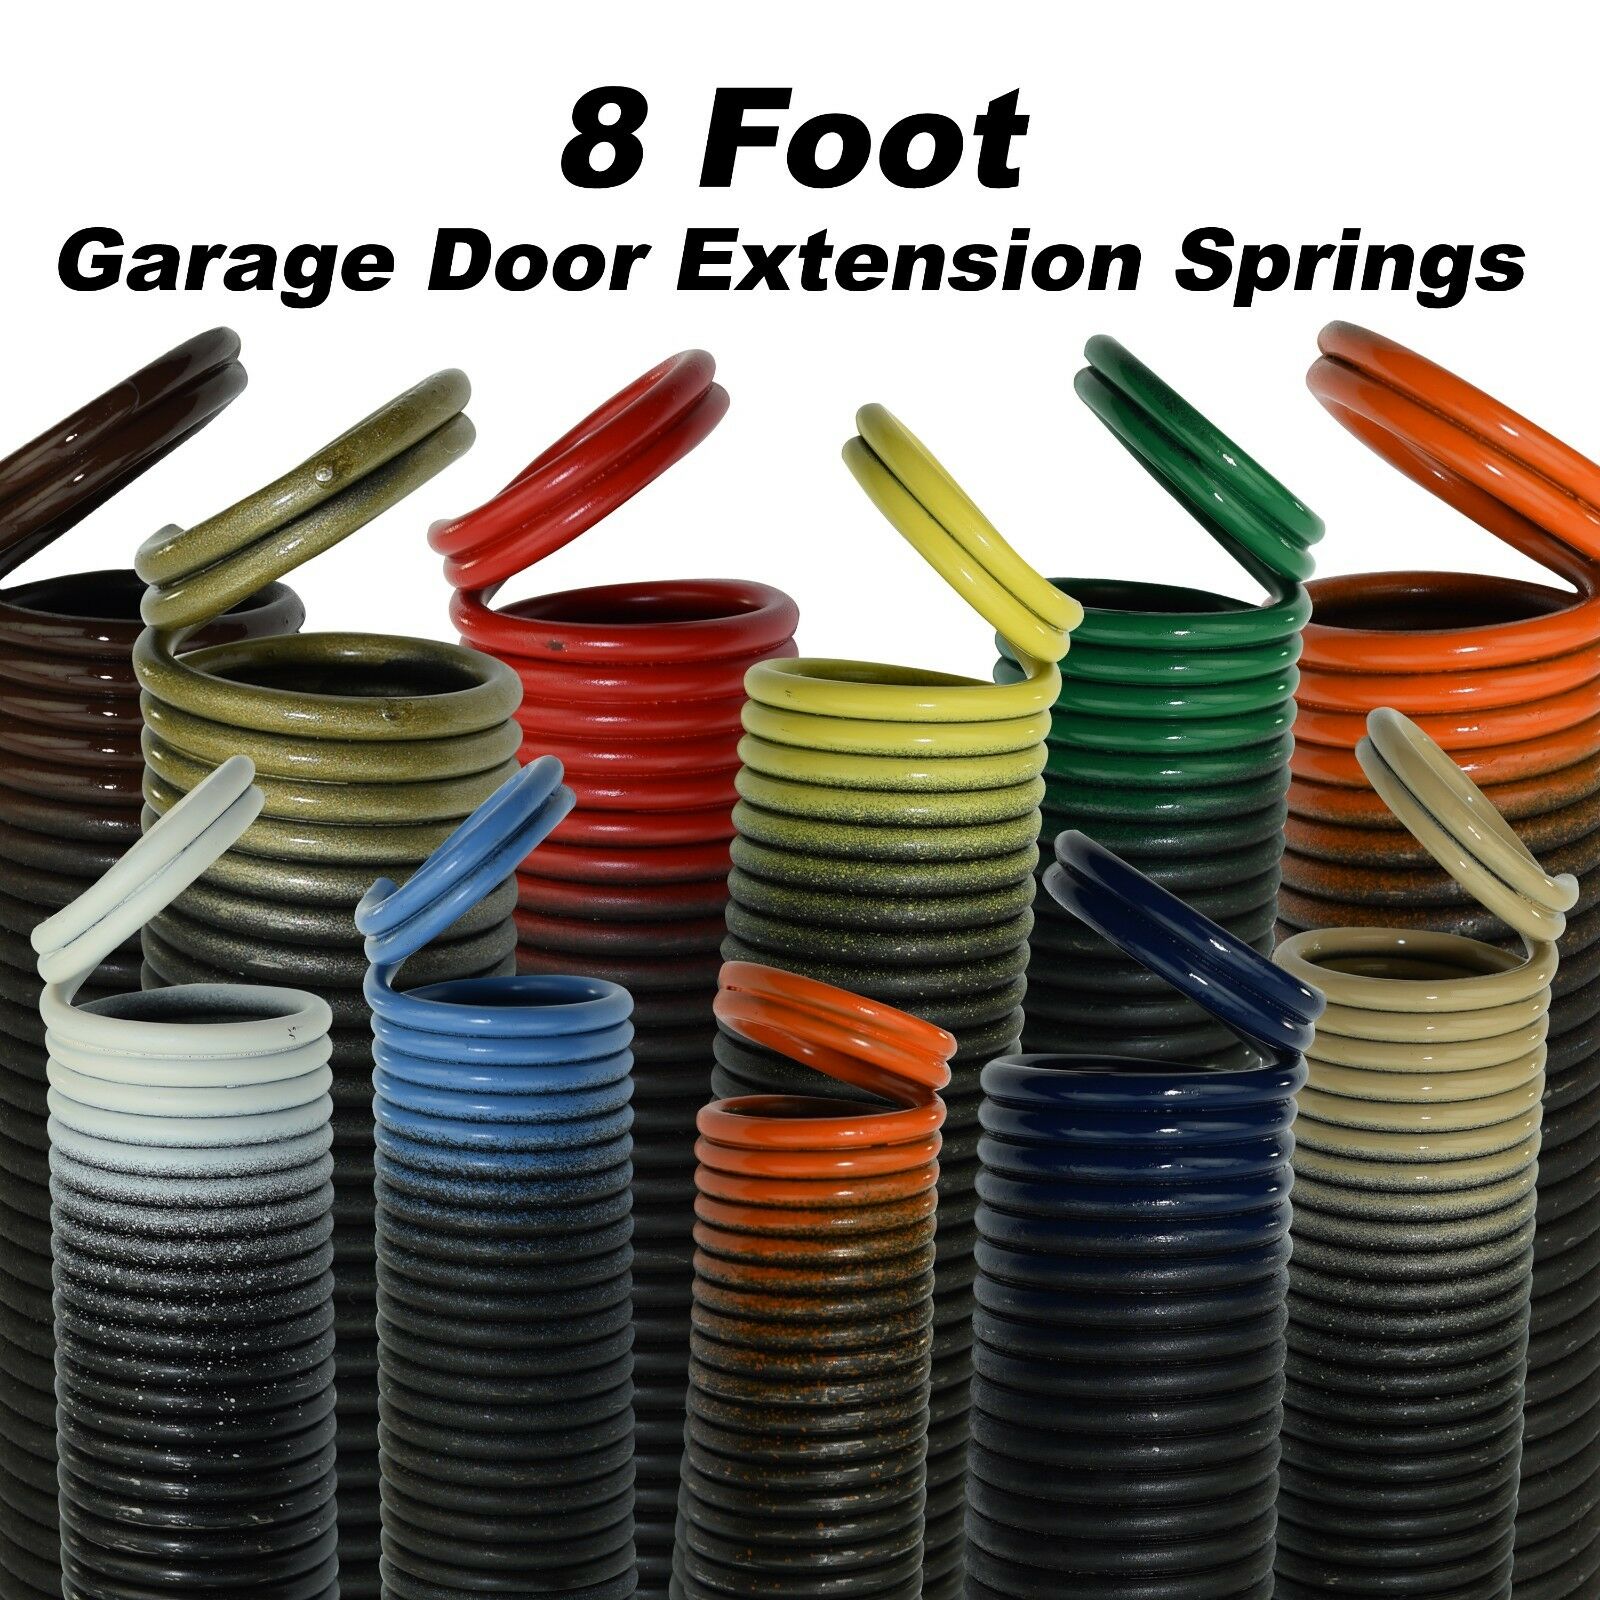 Garage Door Extension Springs For 8 Foot Tall Garage Door